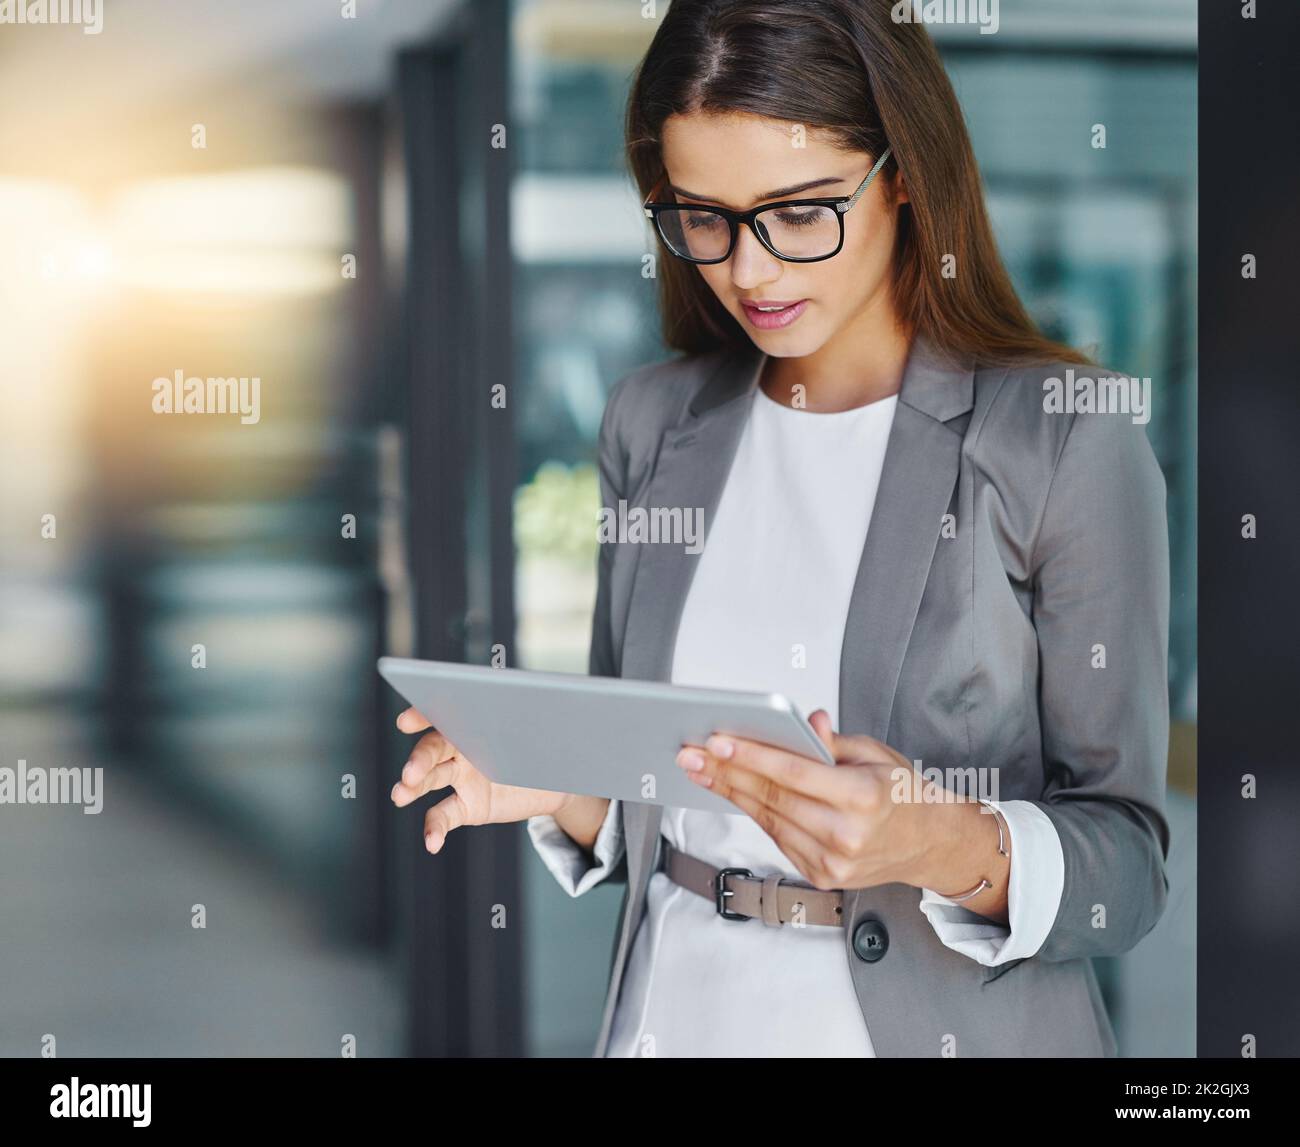 Conectado a la palabra de negocio corporativo. Foto recortada de una joven empresaria atractiva usando su tableta en la oficina. Foto de stock